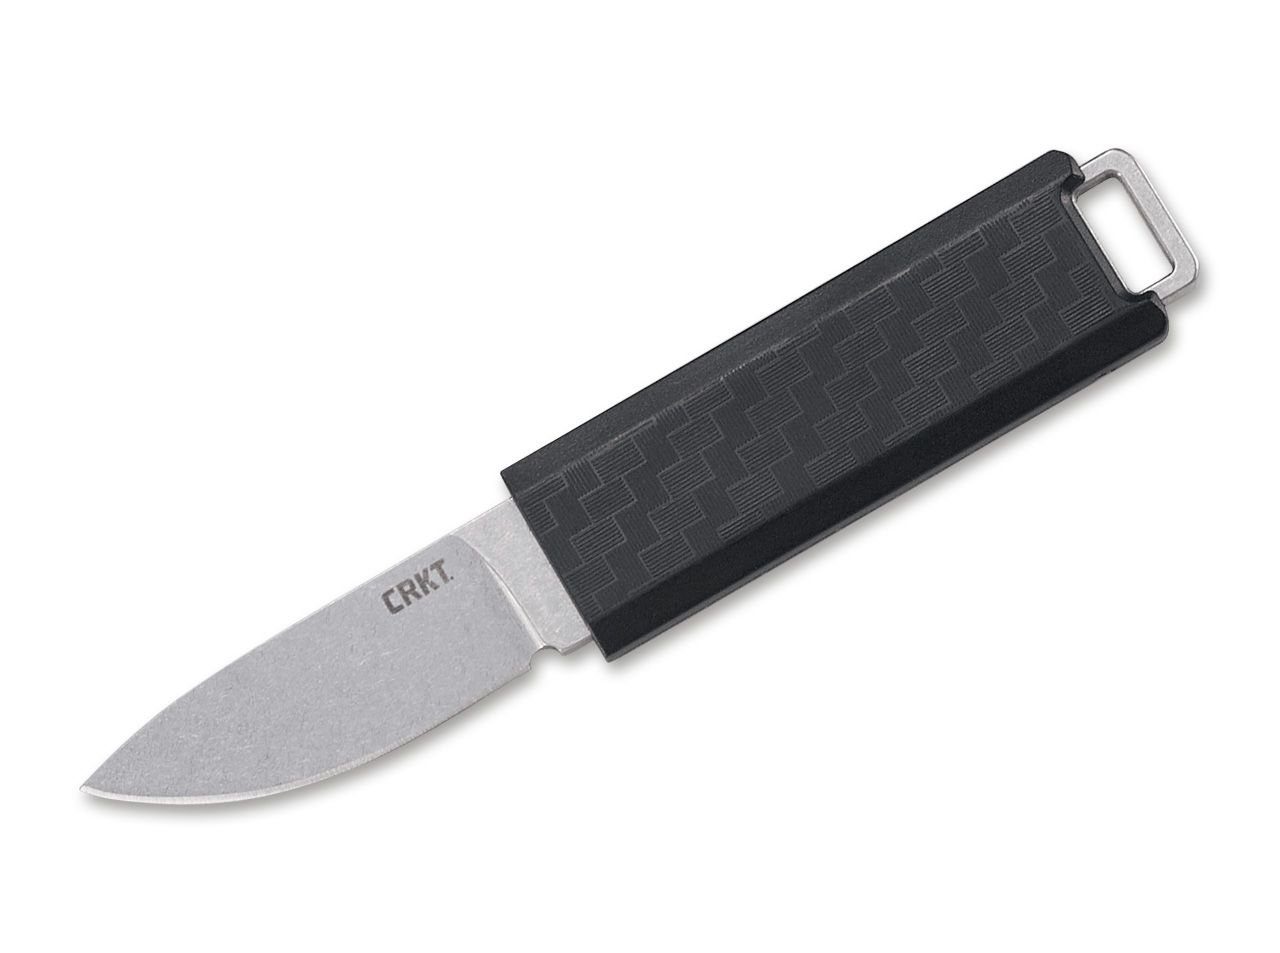 CRKT Messer Clip Mini feststehend Universalmesser Black Scribe